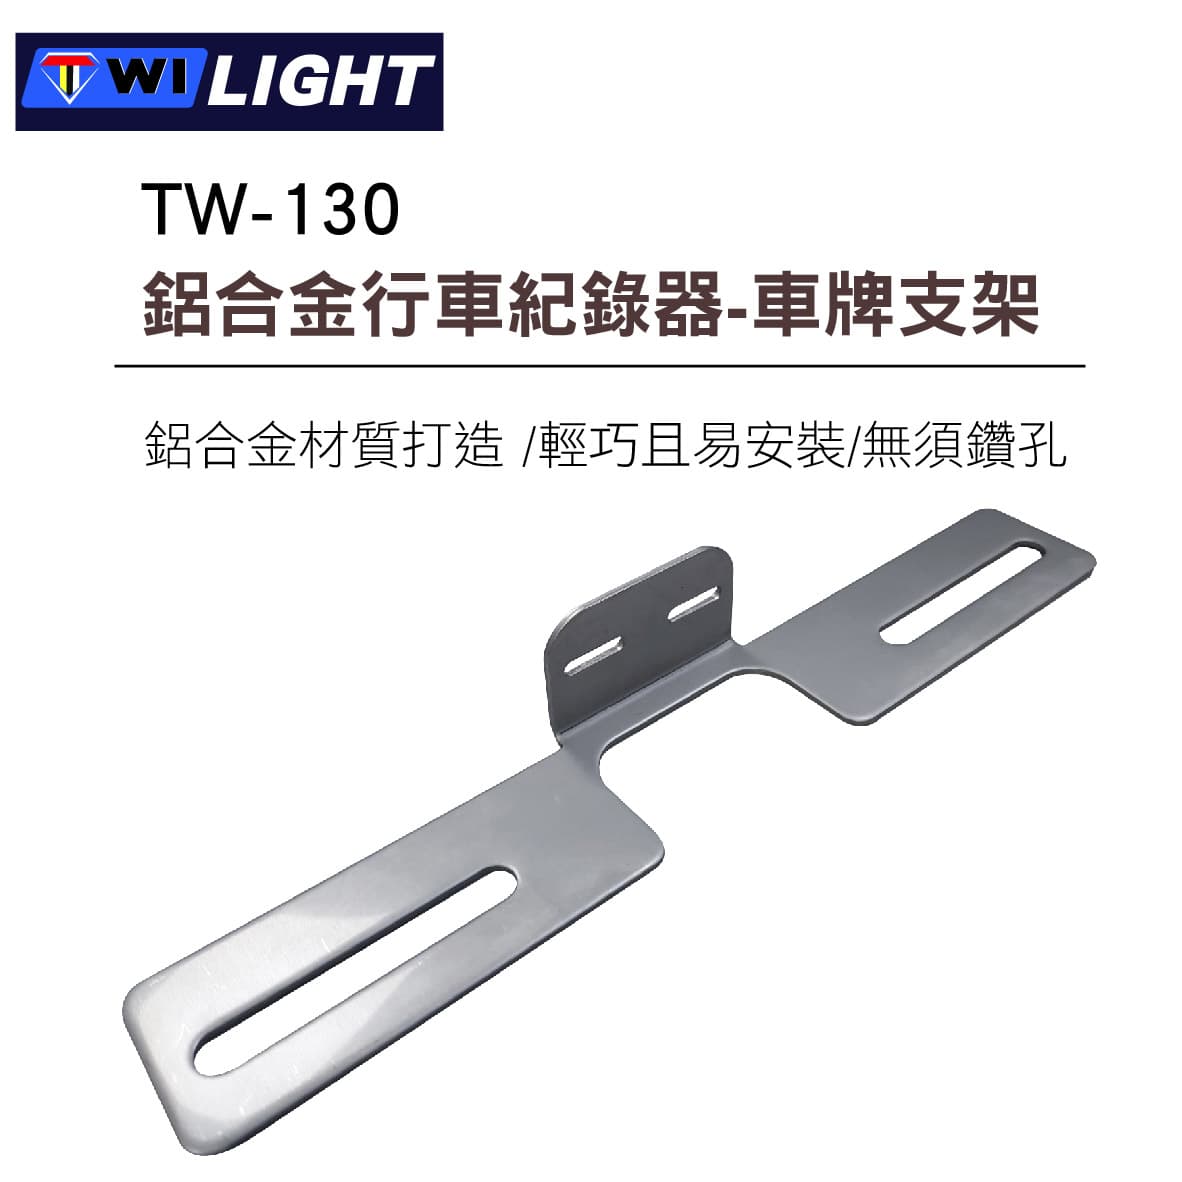 真便宜 TWI LIGHT TW-130 鋁合金行車紀錄器鏡頭固定支架